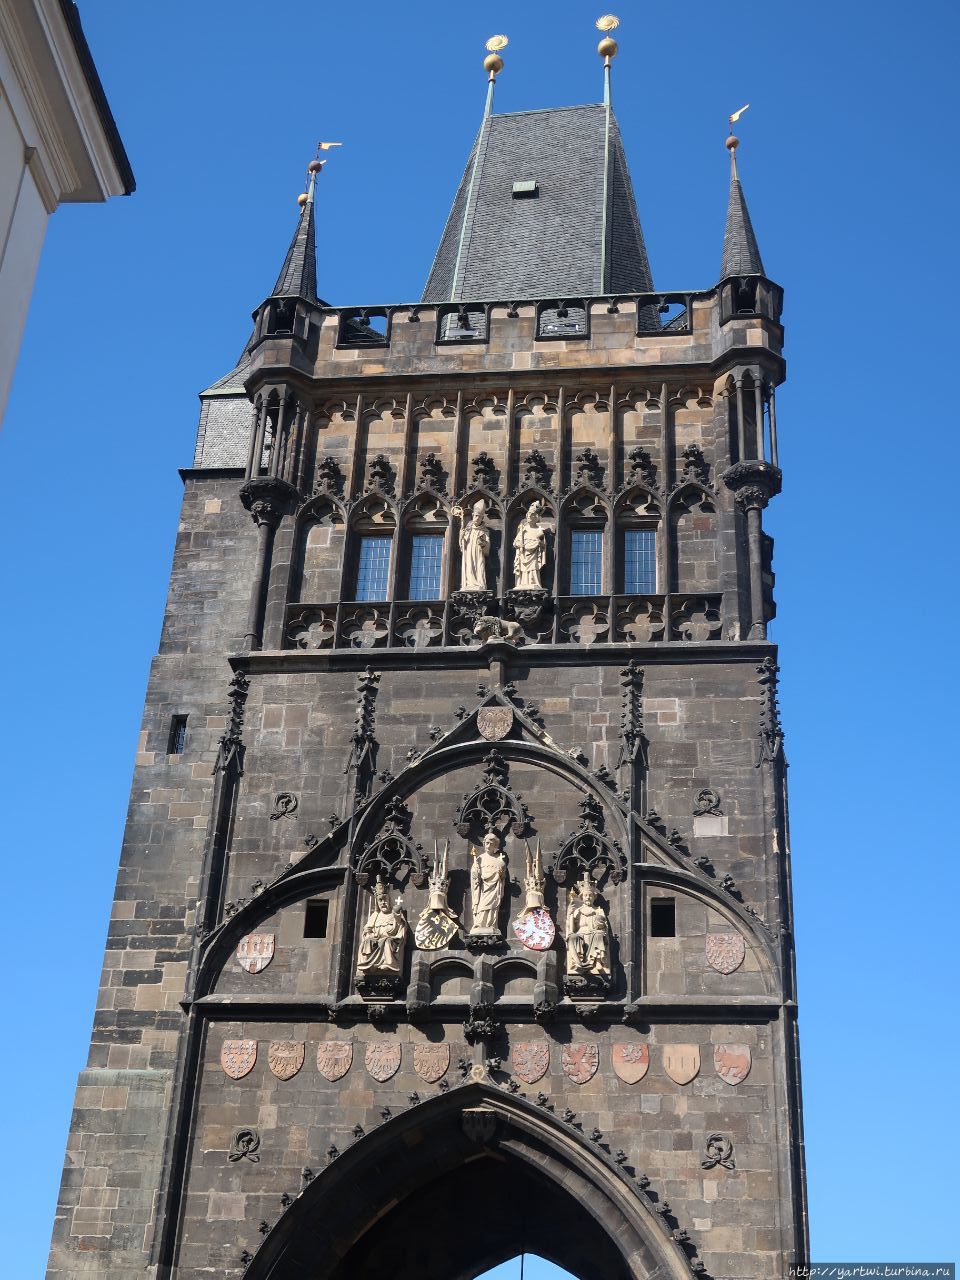 Восточная мостовая башня (Староместская мостовая башня). у башни было двойное предназначение. Во-первых: изначально ее ворота были оснащены опускающейся решеткой, и башня служила частью городского укрепления, защищавшего мост и не раз спасавшего Старый Город (Staré Město) от разрушения. Во-вторых, Староместская мостовая башня была еще и триумфальной аркой на «Королевской дороге». Прага, Чехия